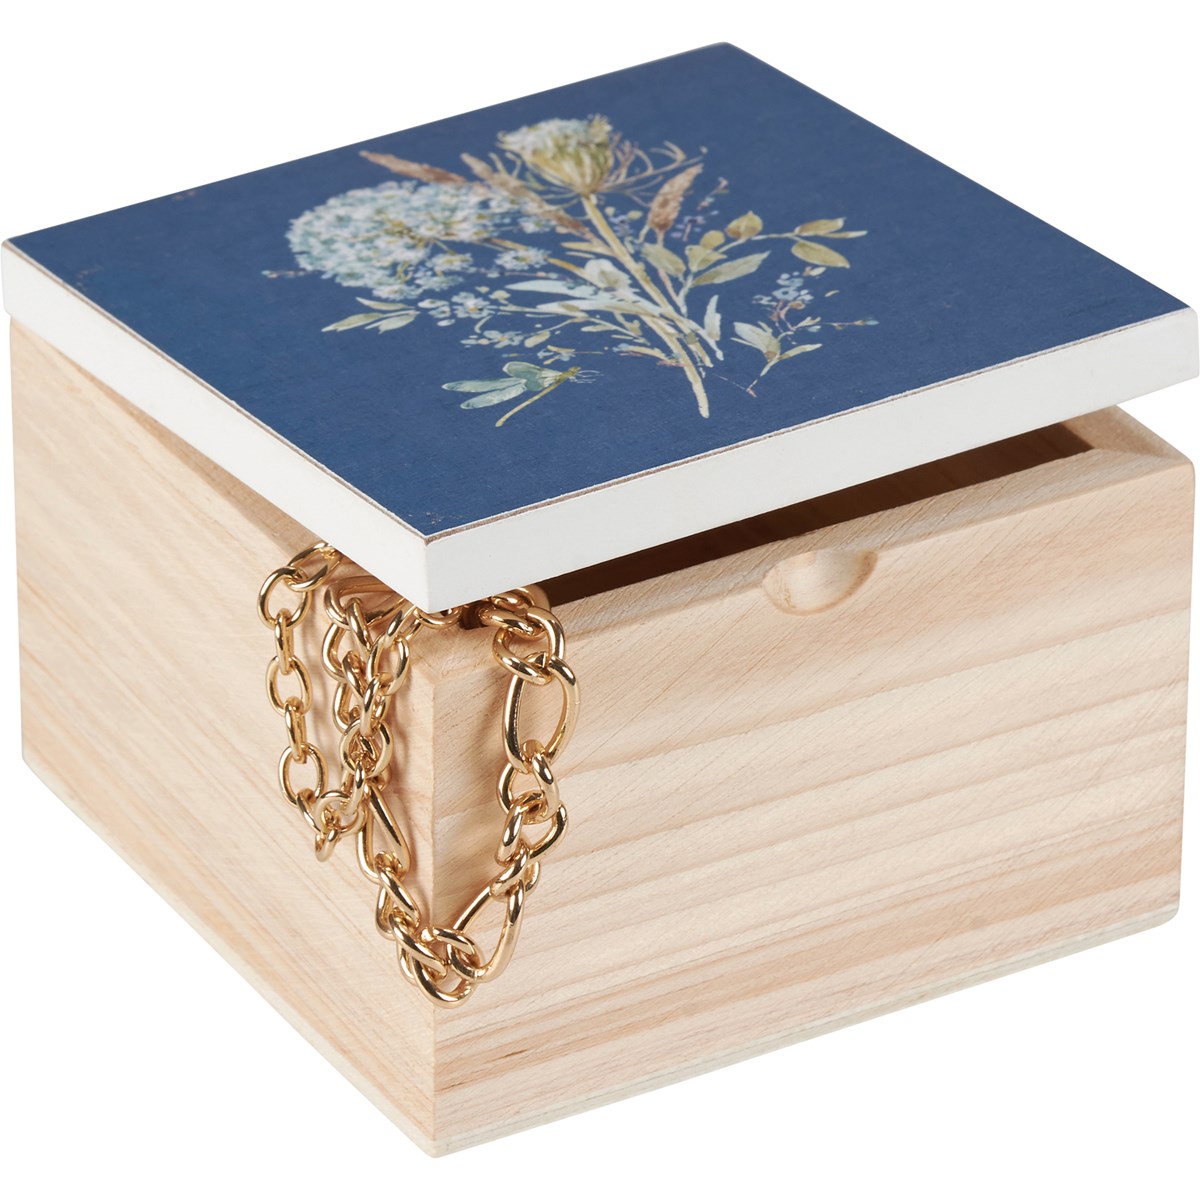 Blue Floral Hinged Box - Wood, Metal